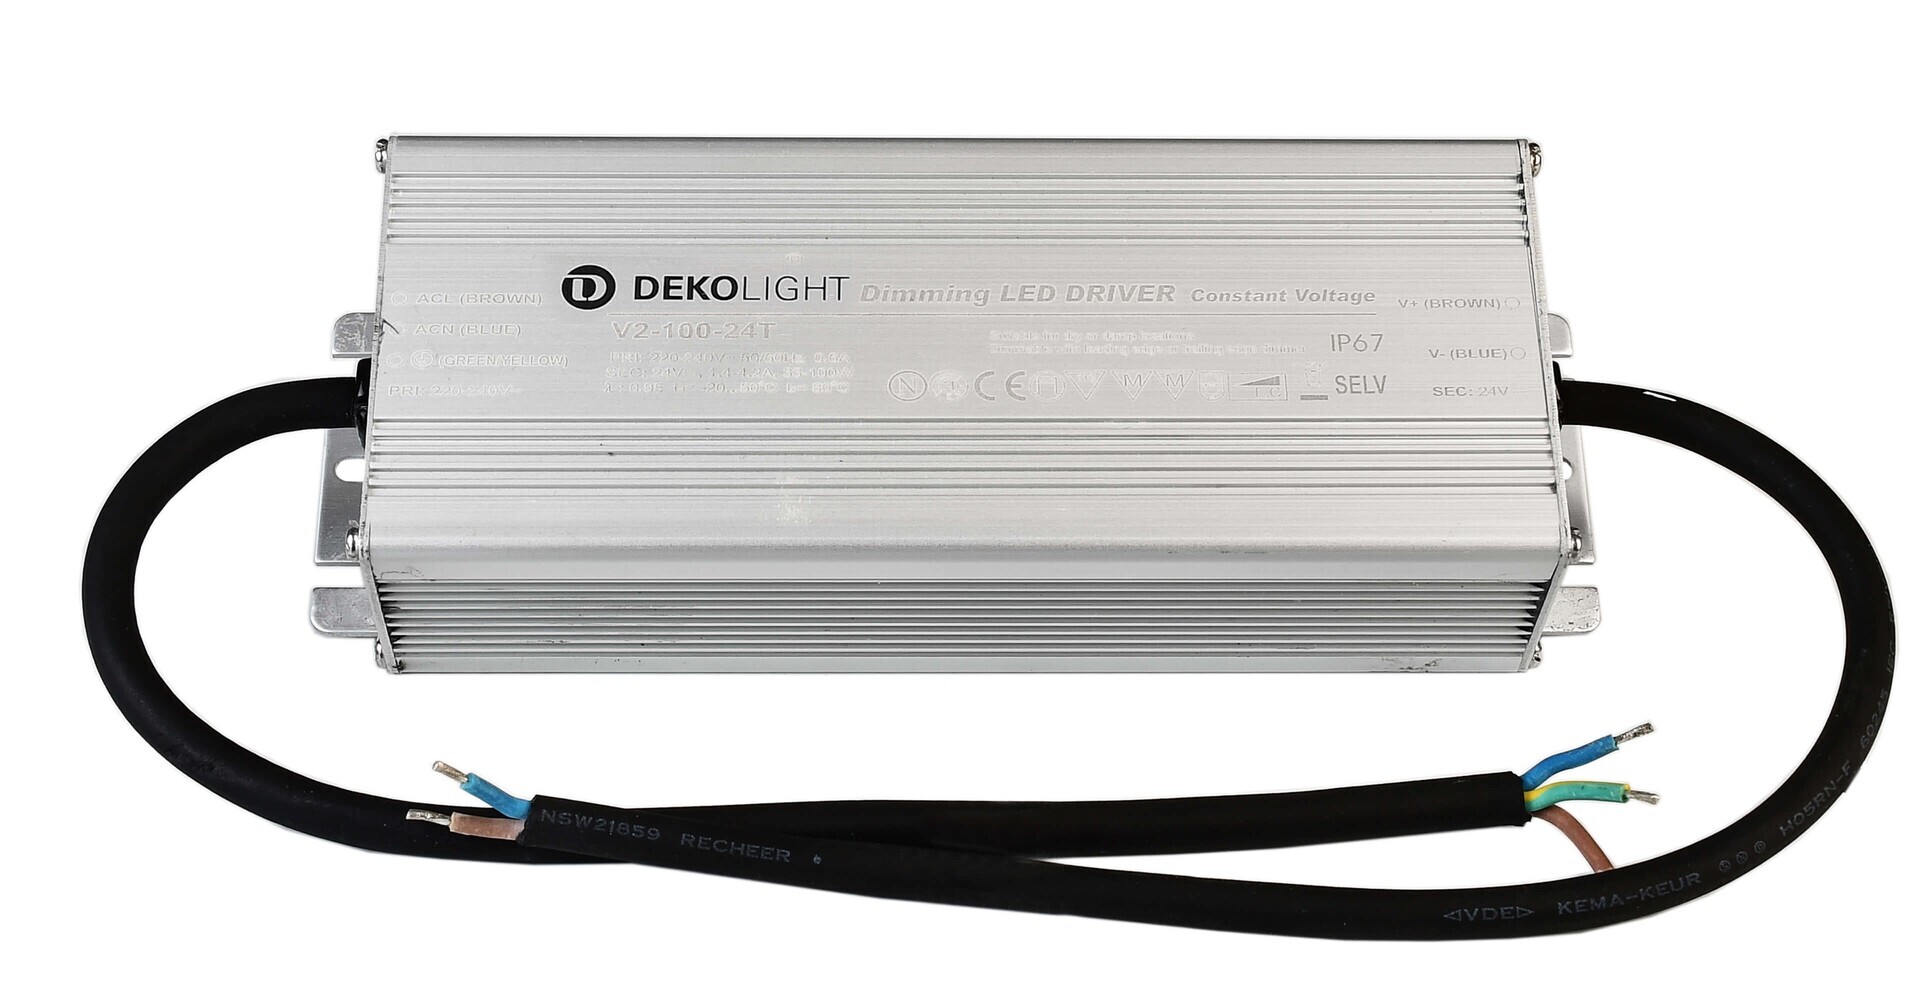 Hochwertiges und dimmbares LED Netzteil von Deko-Light